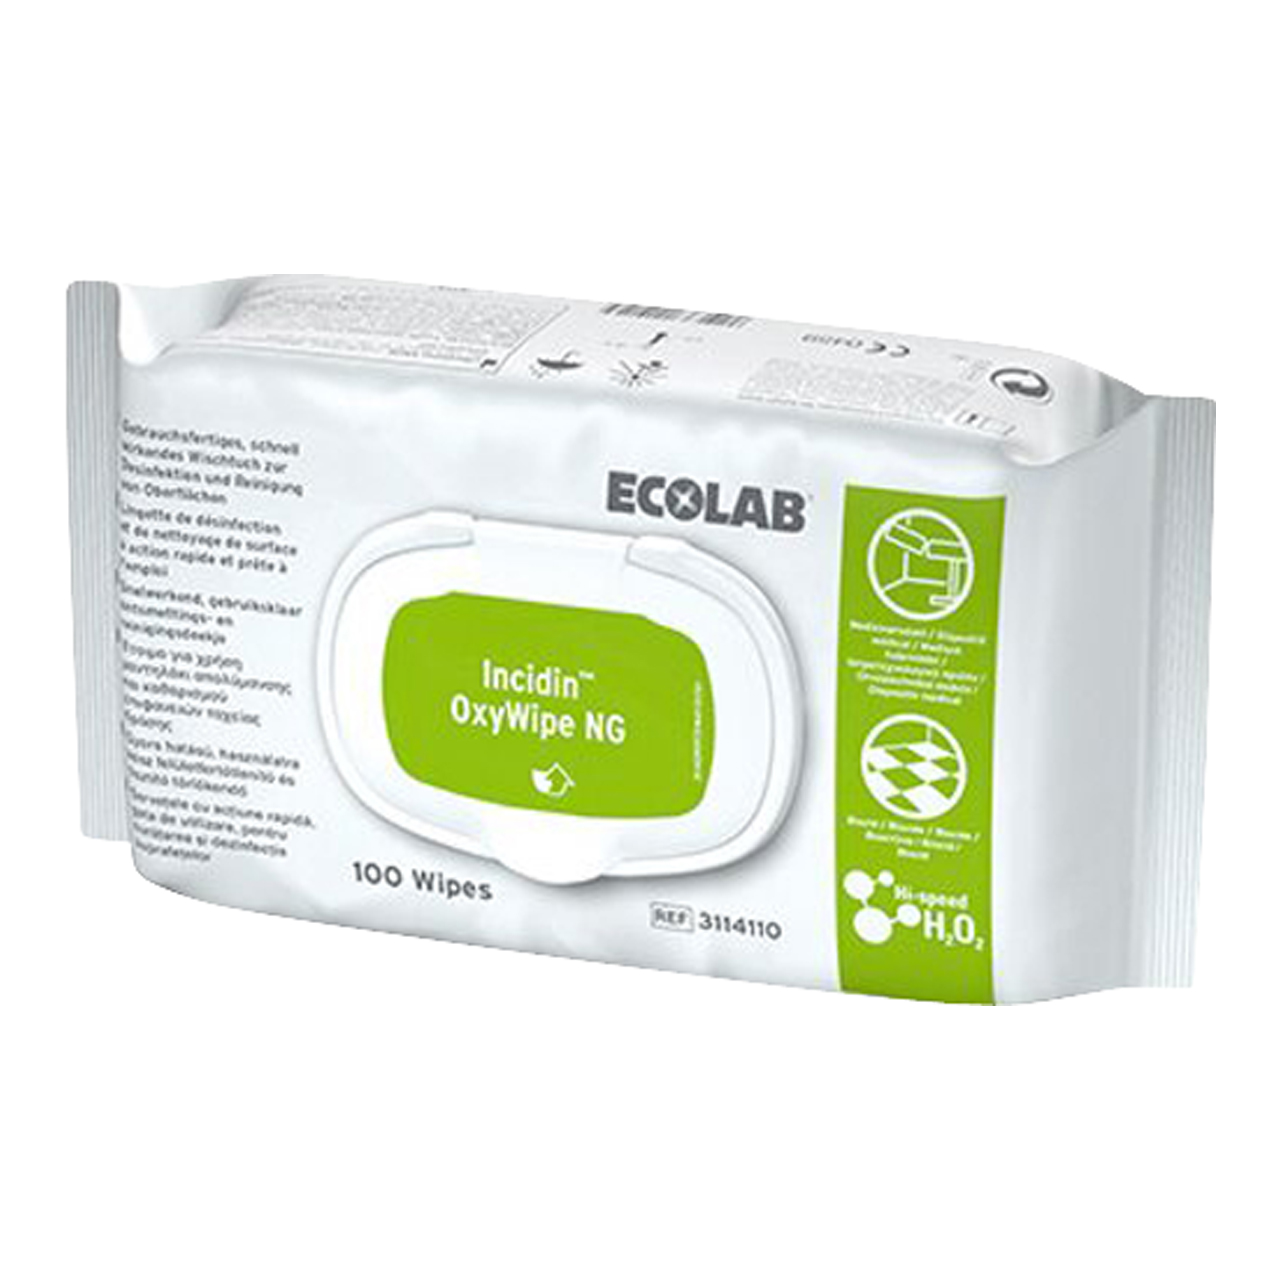 Ecolab Incidin Oxywipe 6X100 Wipes